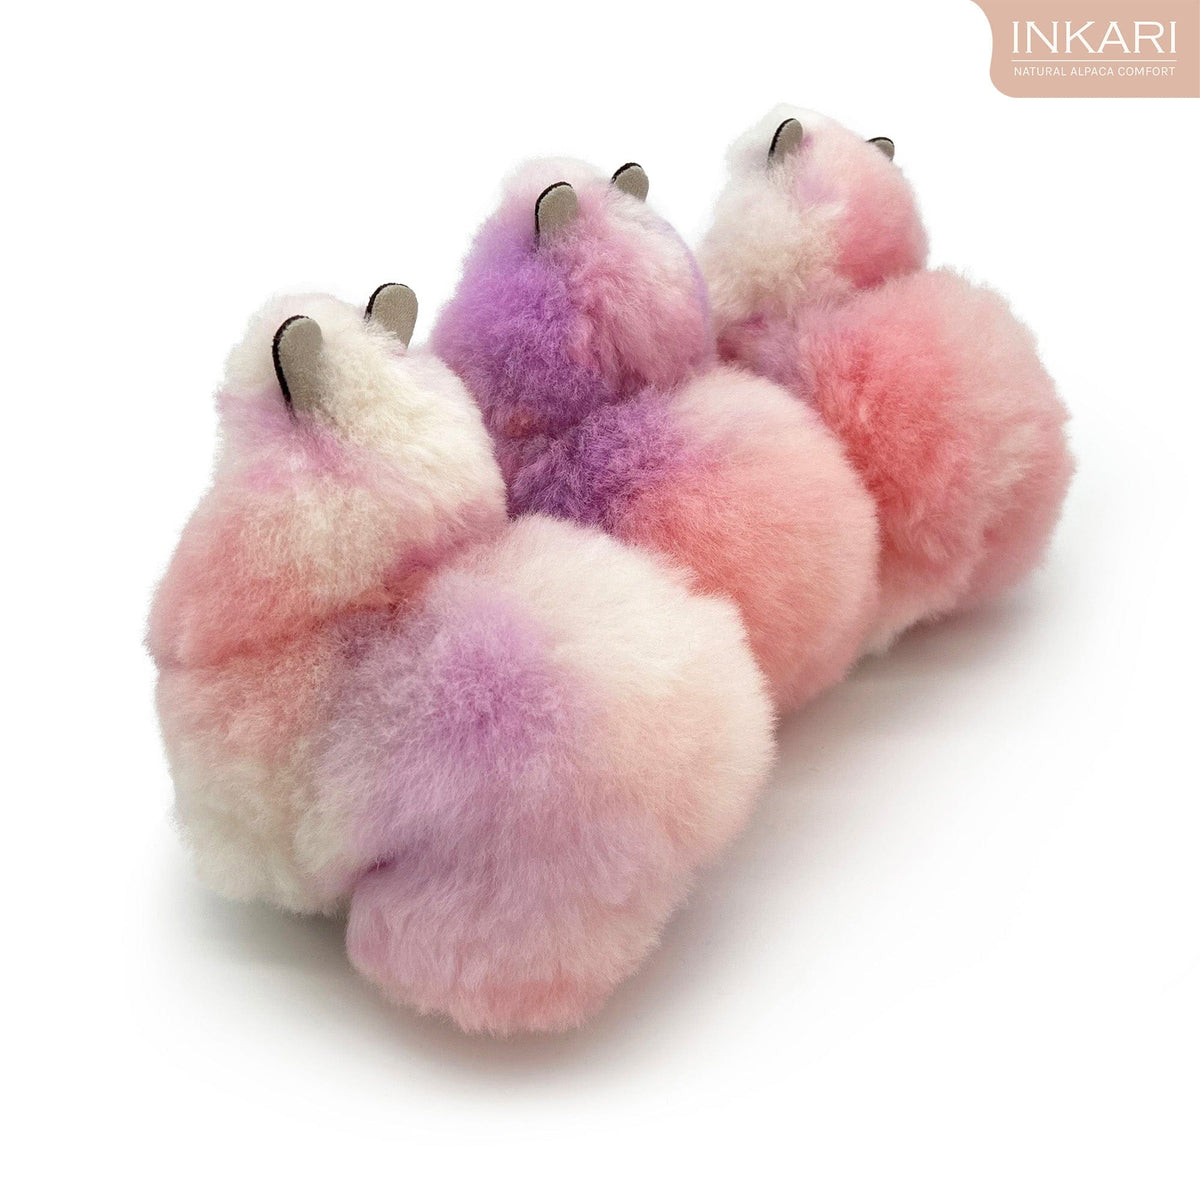 Raspberry Dream – Kleines Alpaka-Spielzeug (23 cm) – limitierte Auflage